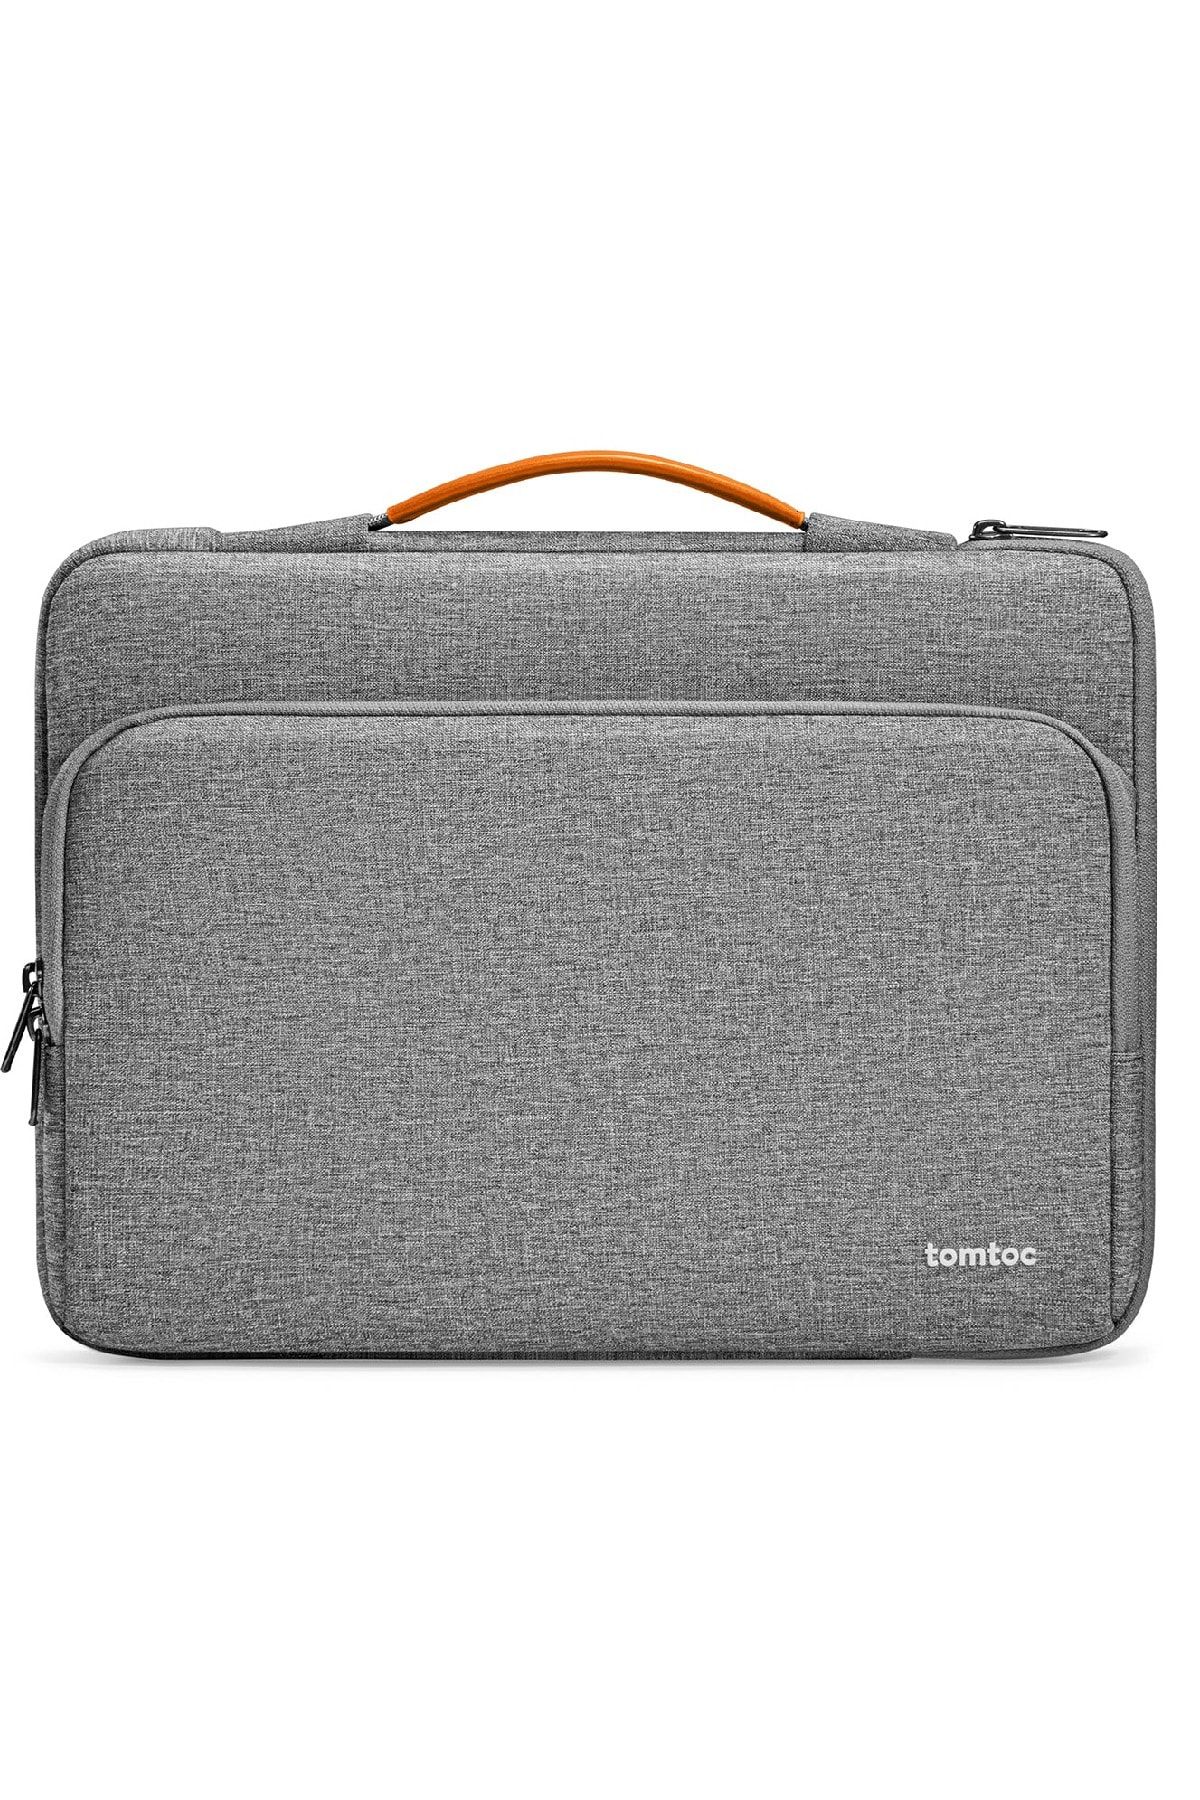 Tomtoc Defender A14 16 Inç Gri Macbook Pro Çantası - A14f2g1